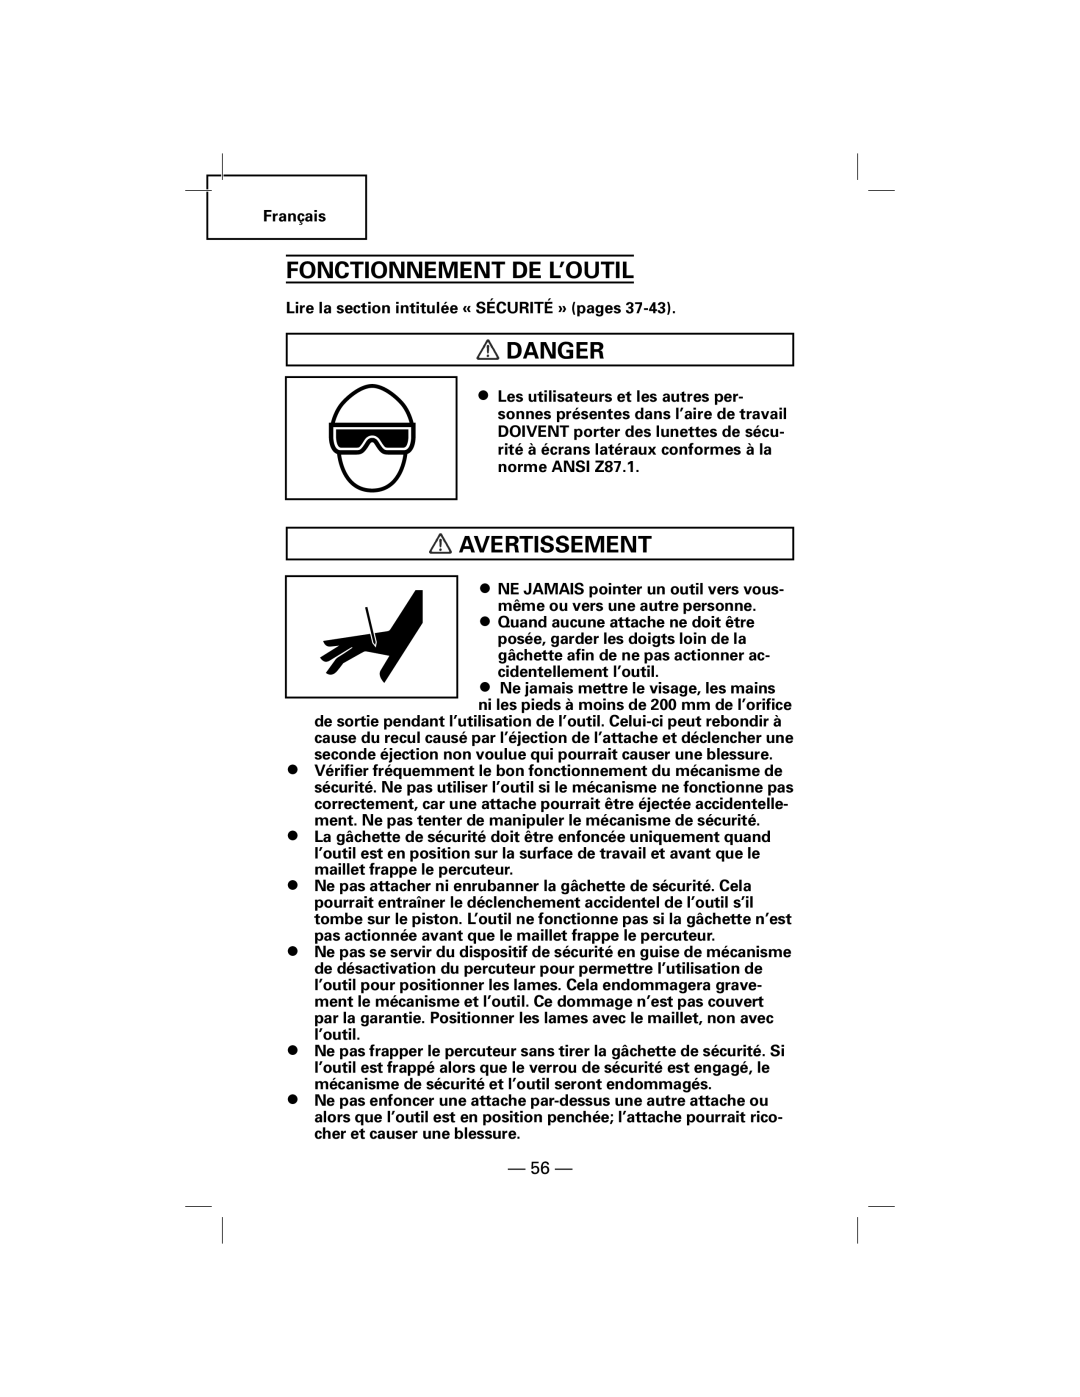 Hitachi N5009AF, NT50AF manual Fonctionnement De L’Outil, Danger, Avertissement 